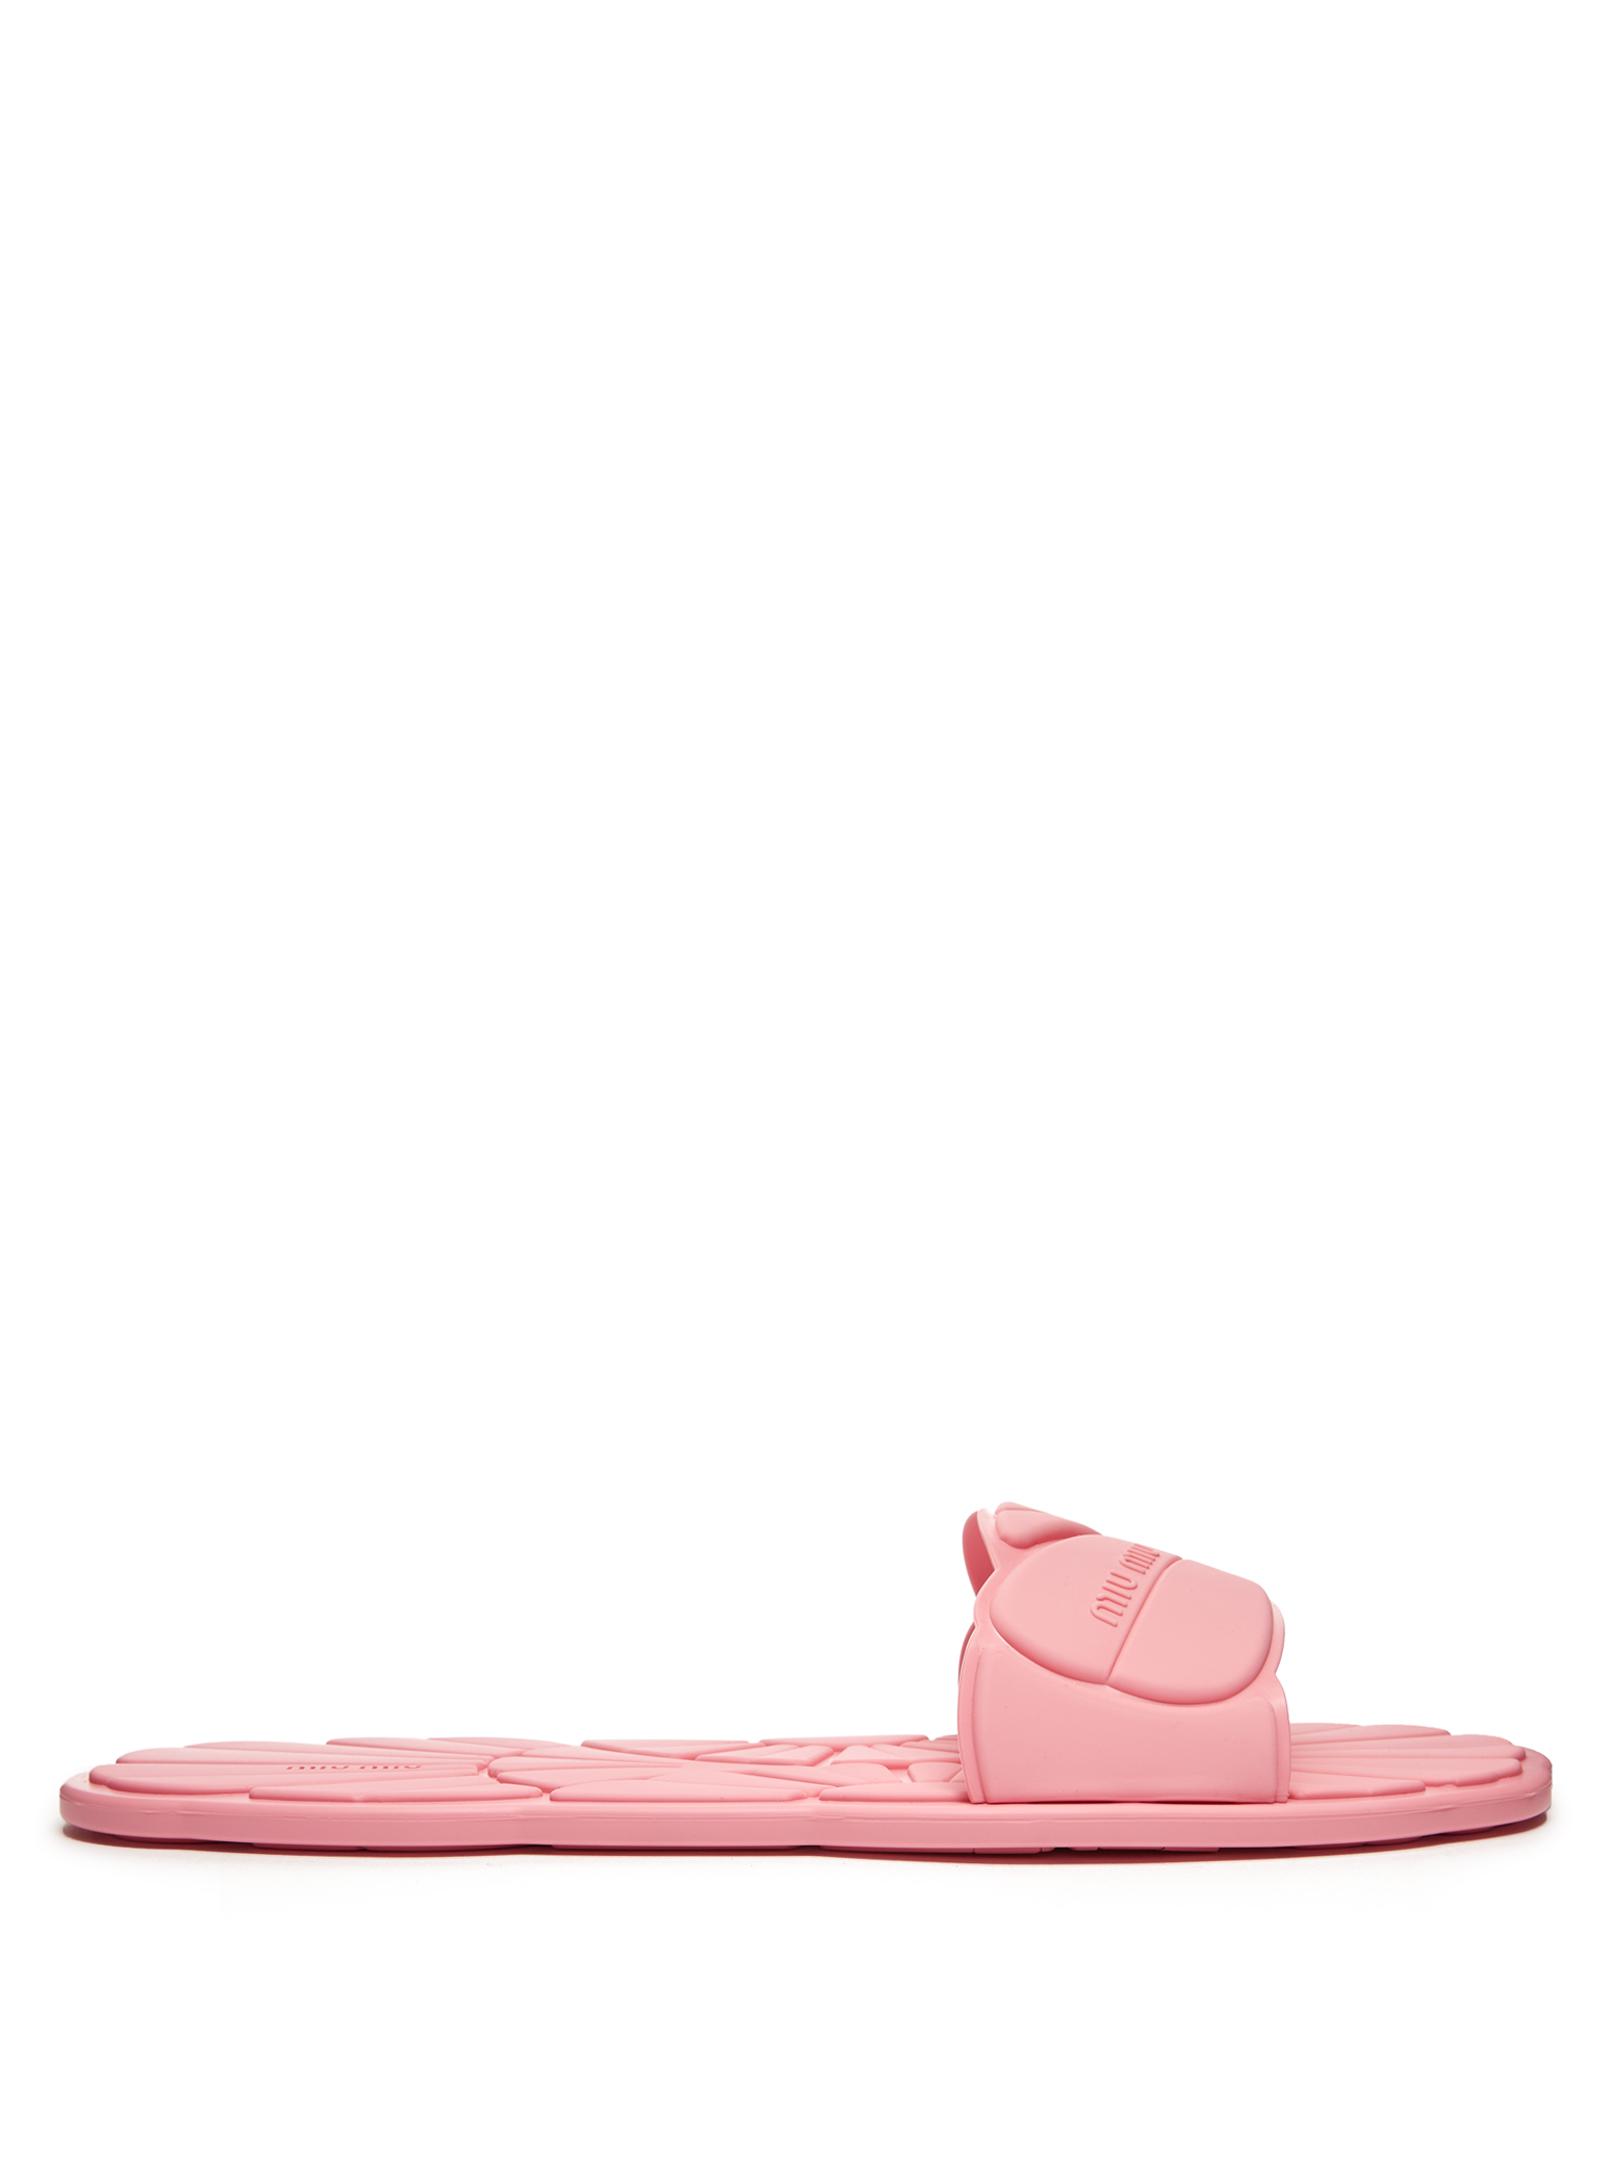 Miu Miu Flower-embossed Rubber Pool Slides in Light Pink (Pink) | Lyst